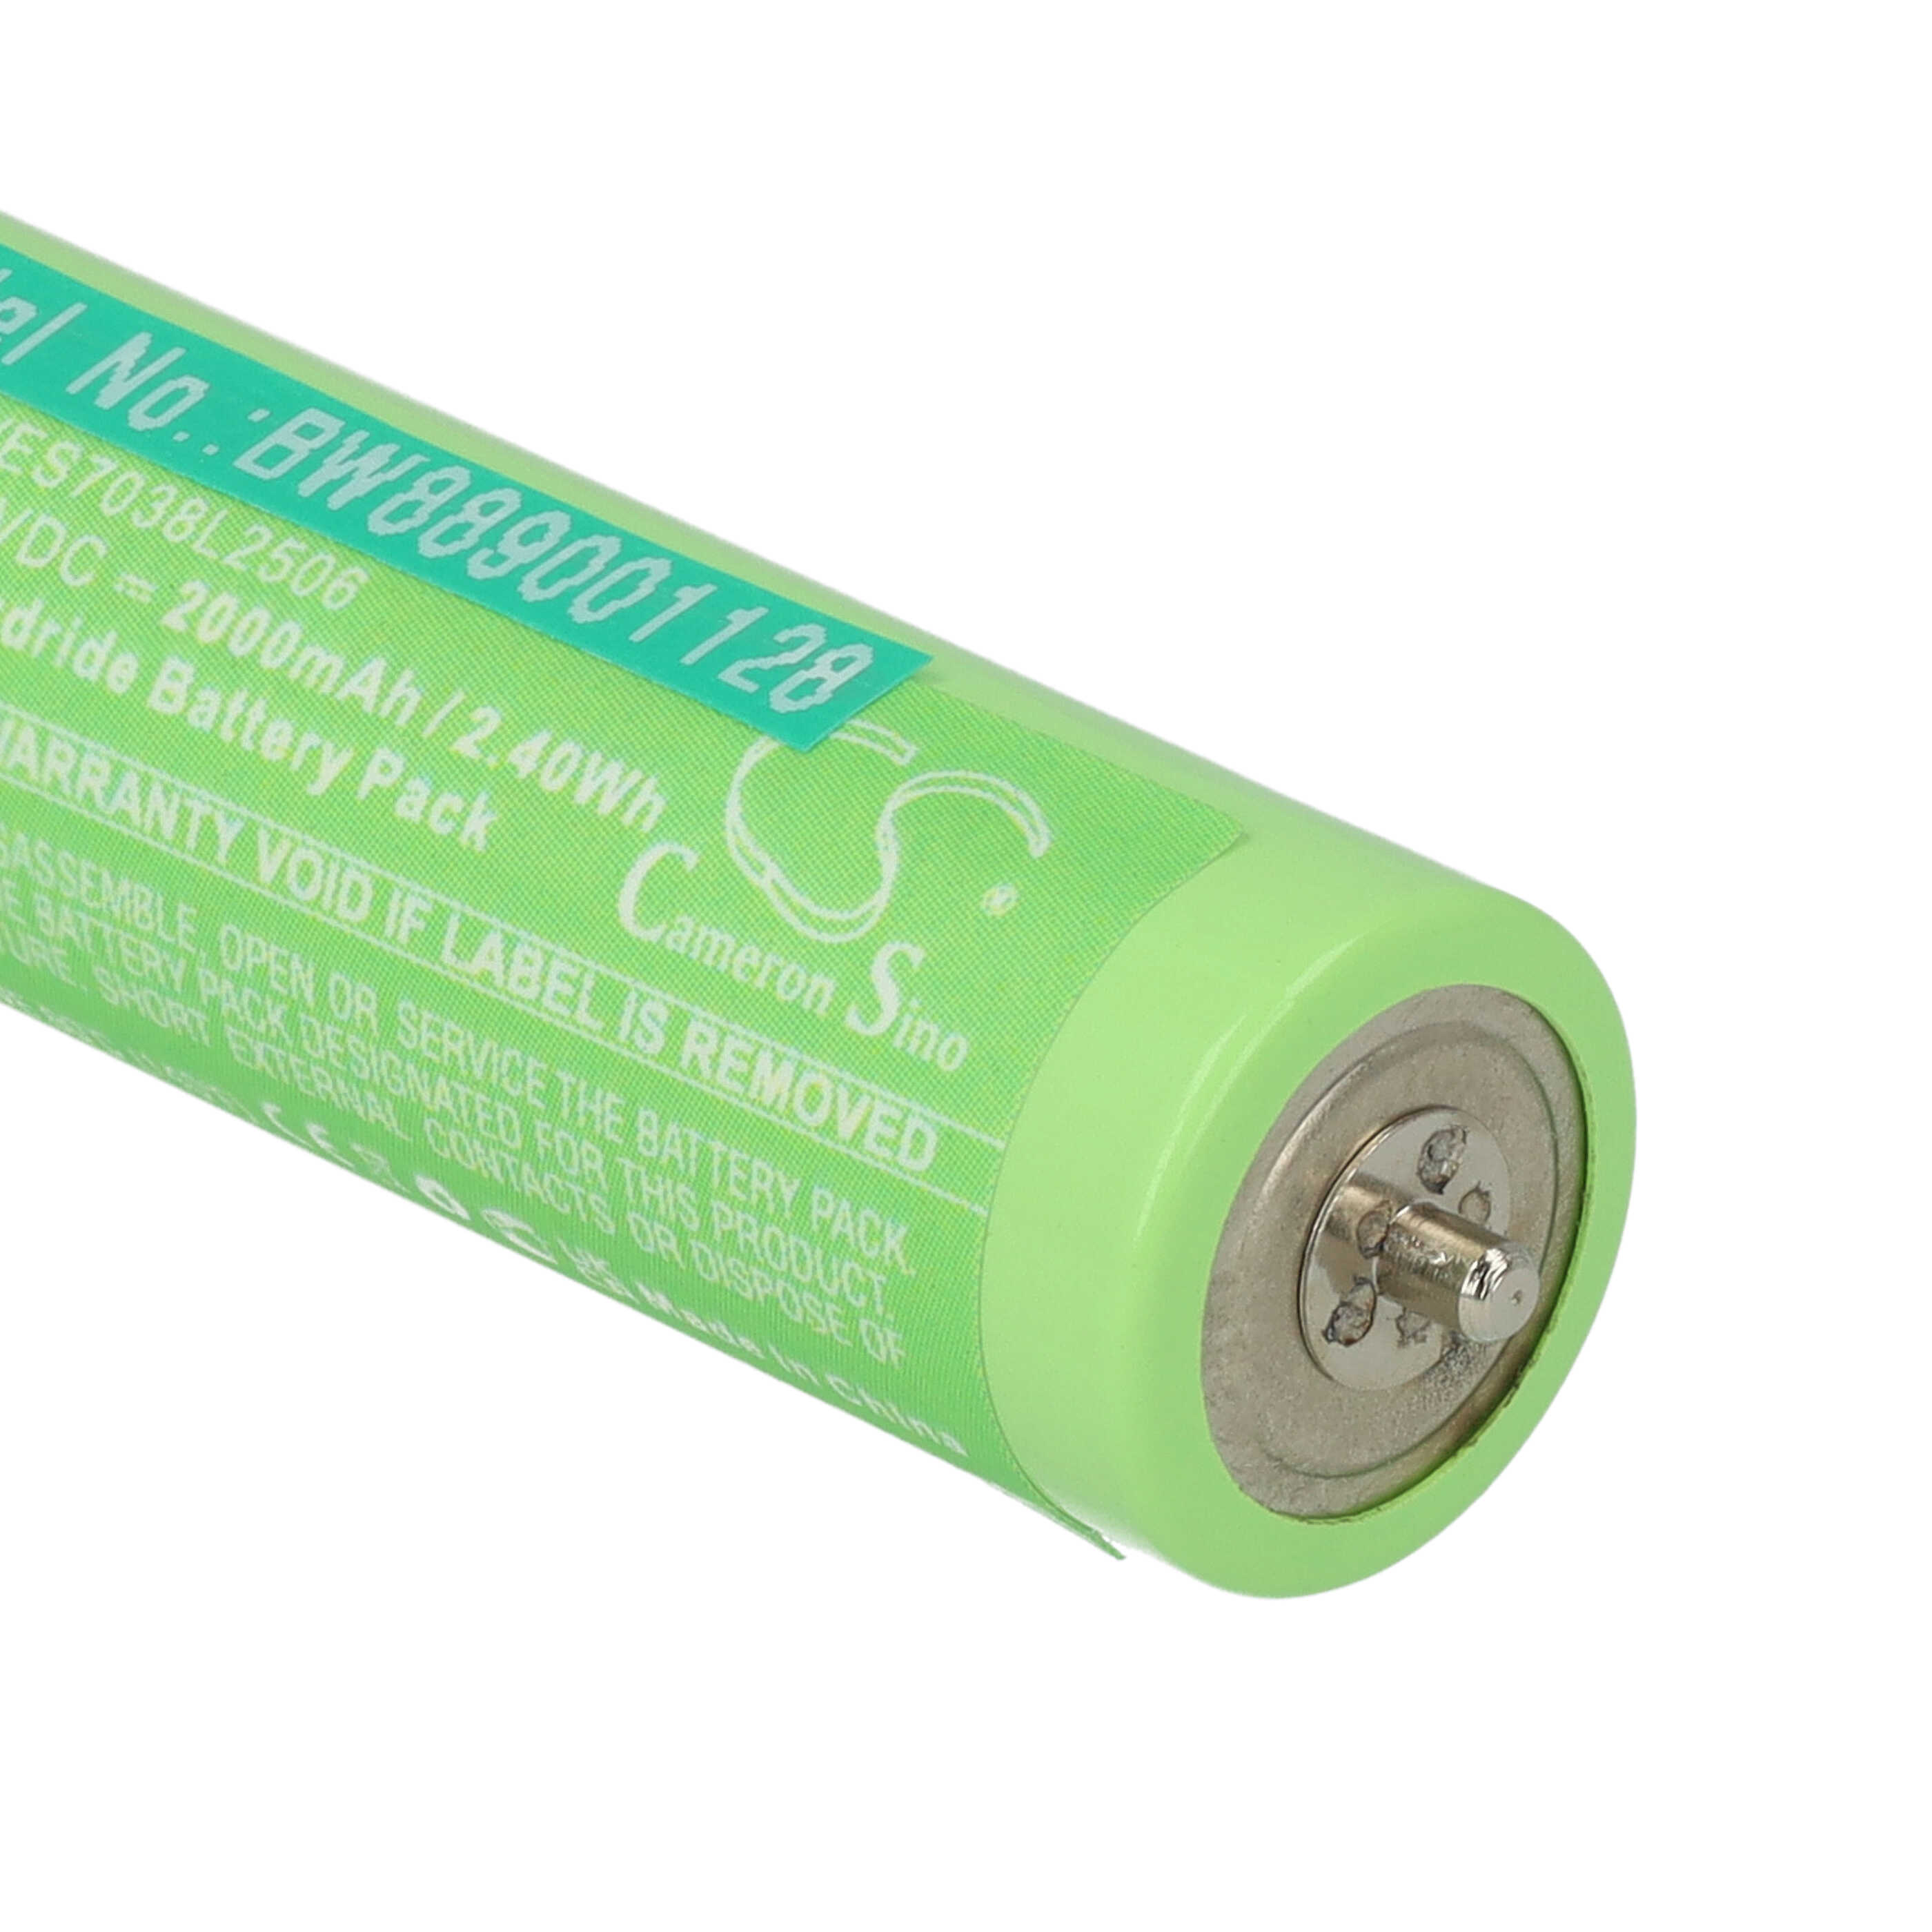 Batterie remplace Panasonic WERGB80L2508, WES7038L2506 pour rasoir électrique - 2000mAh 1,2V NiMH